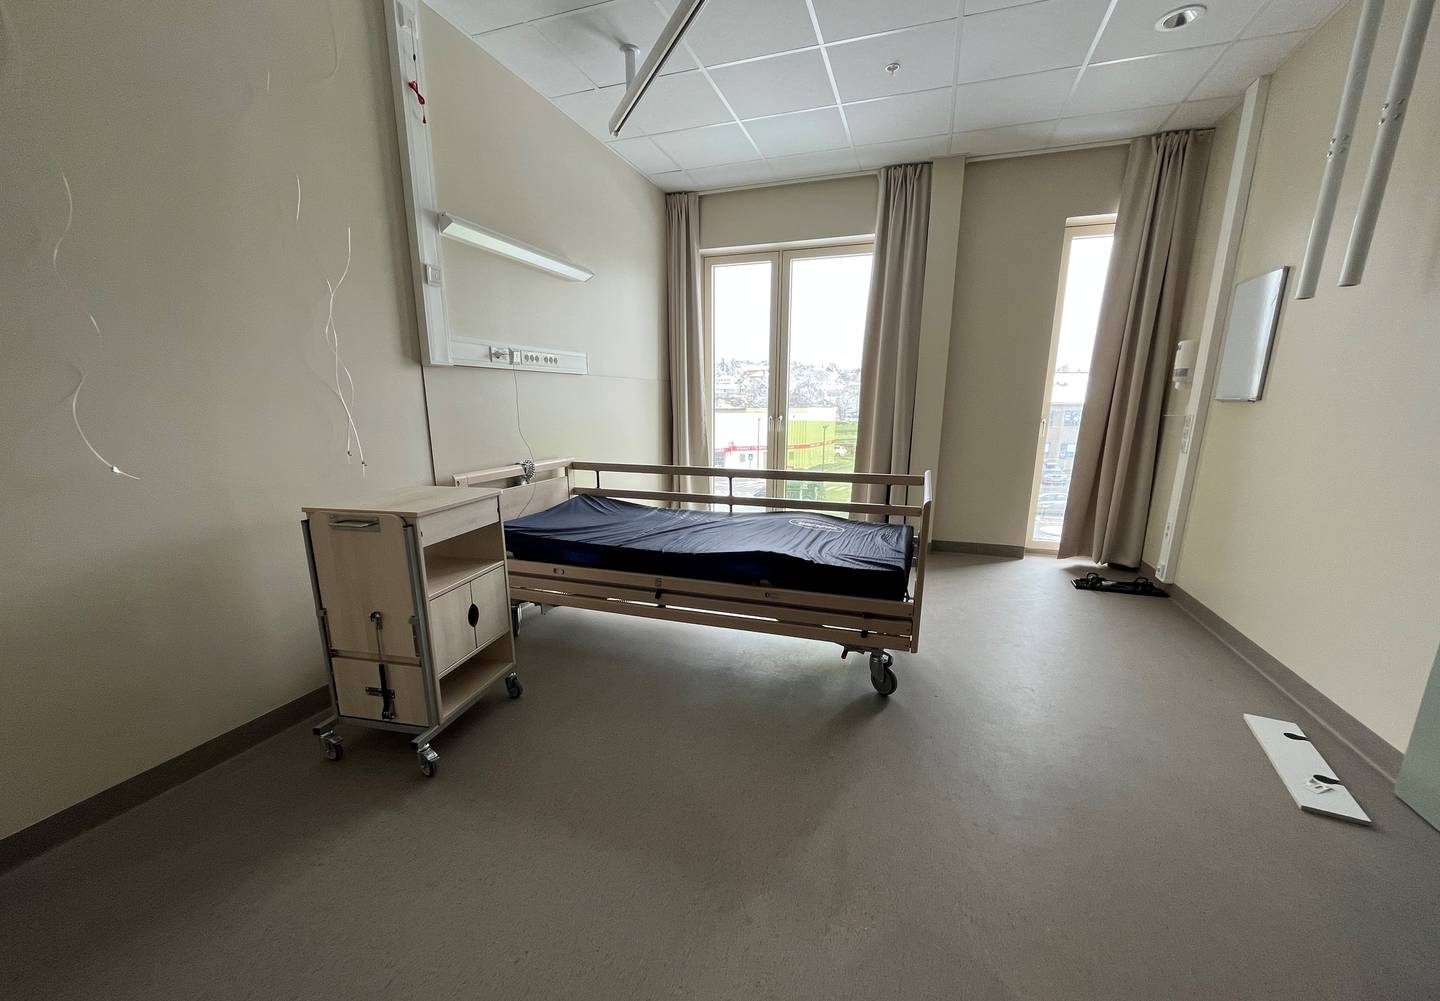 Slik ser rommene ut før beboere og pasienter har flyttet inn noen av sine egne møbler.